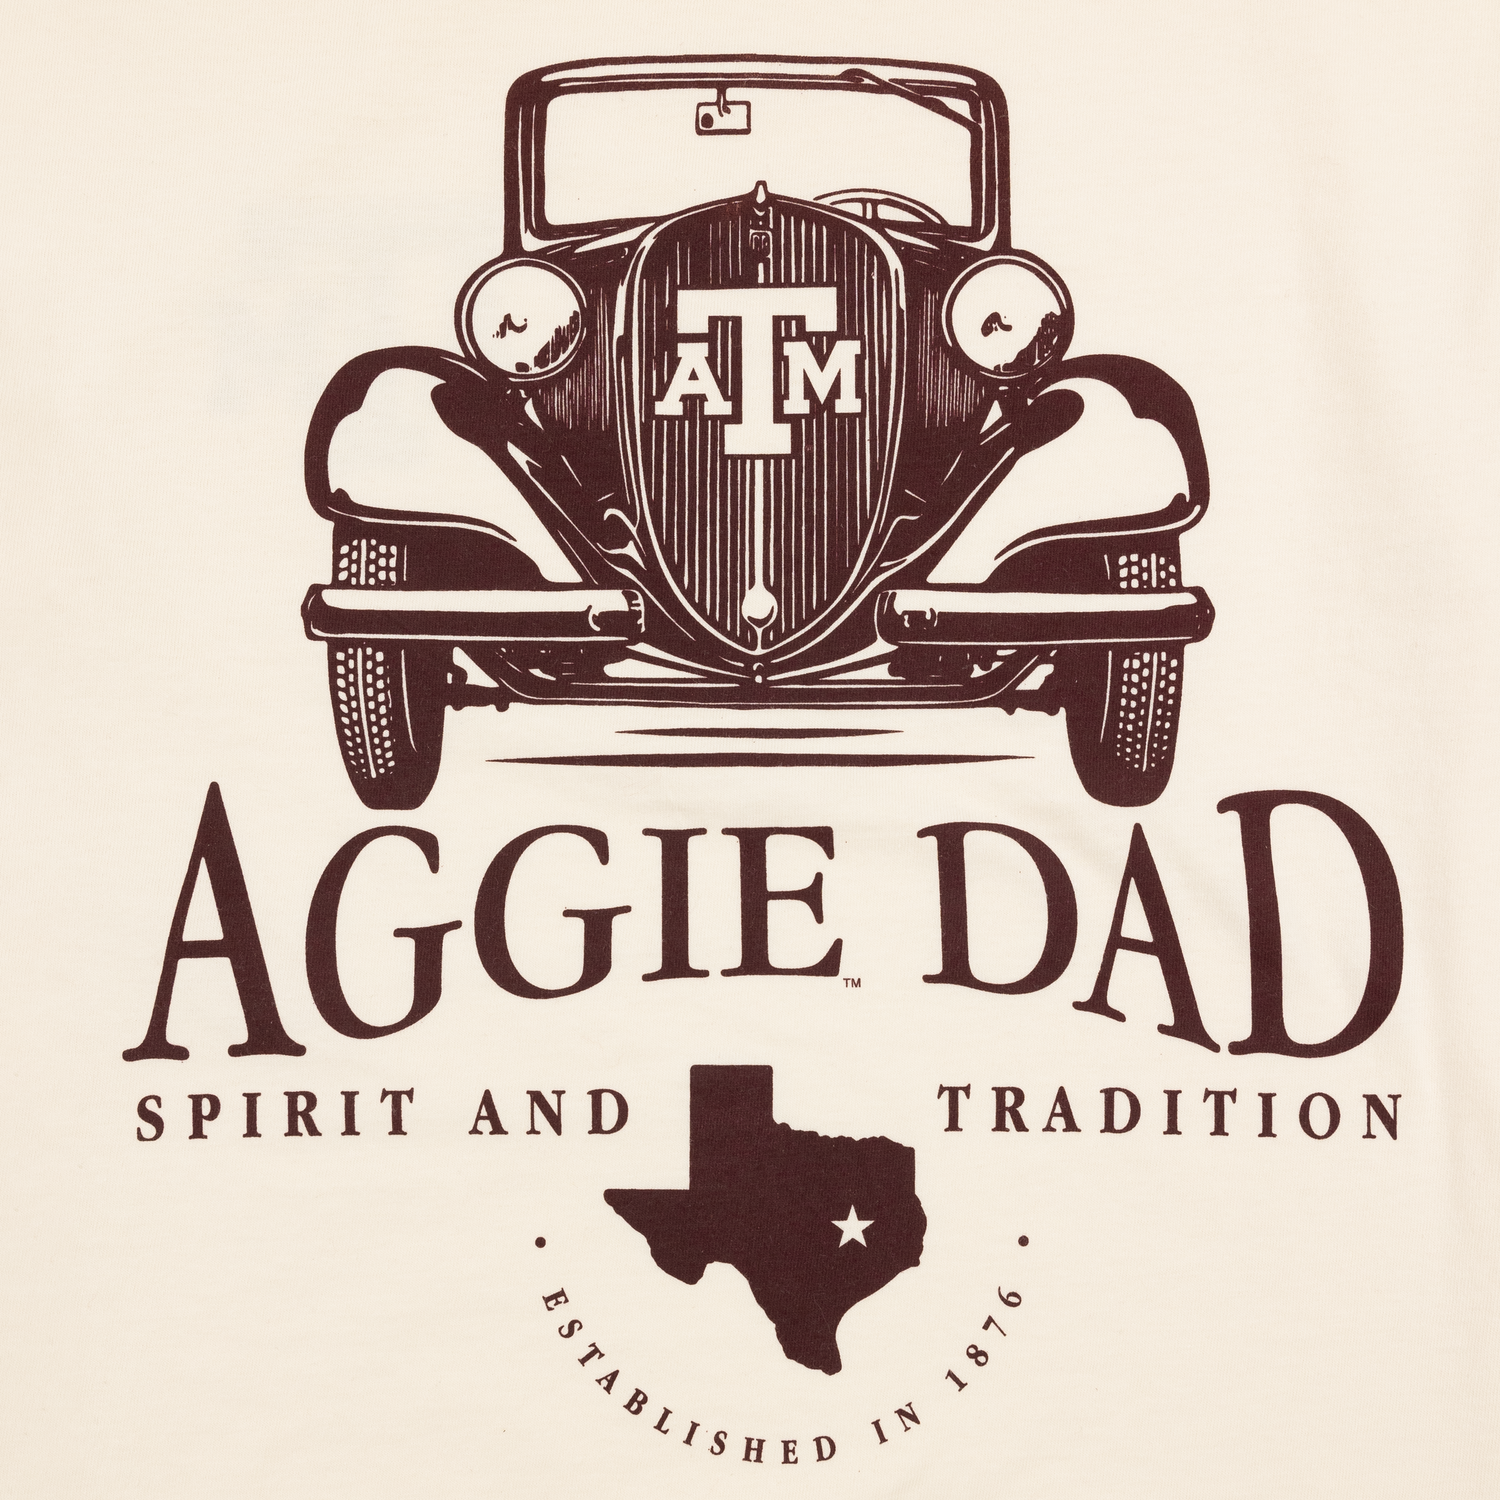 Texas A&M Aggie Dad Vintage Car T-Shirt